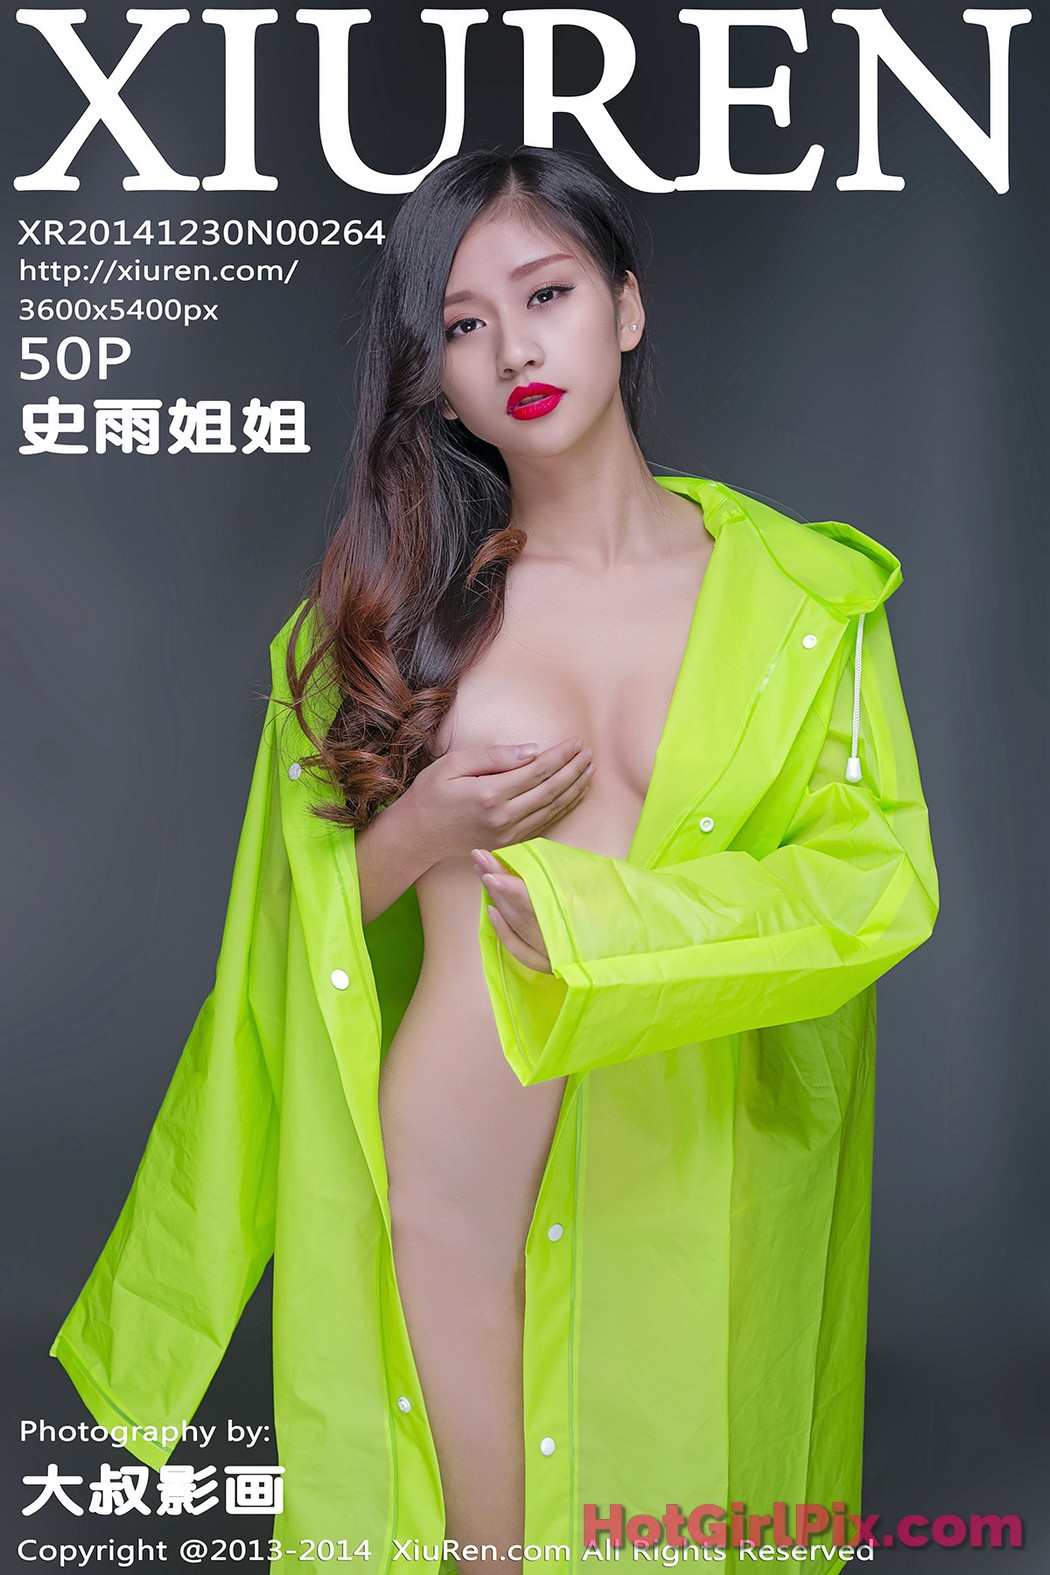 [XIUREN] No.264 Shi Yu Jiejie 史雨姐姐 Cover Photo